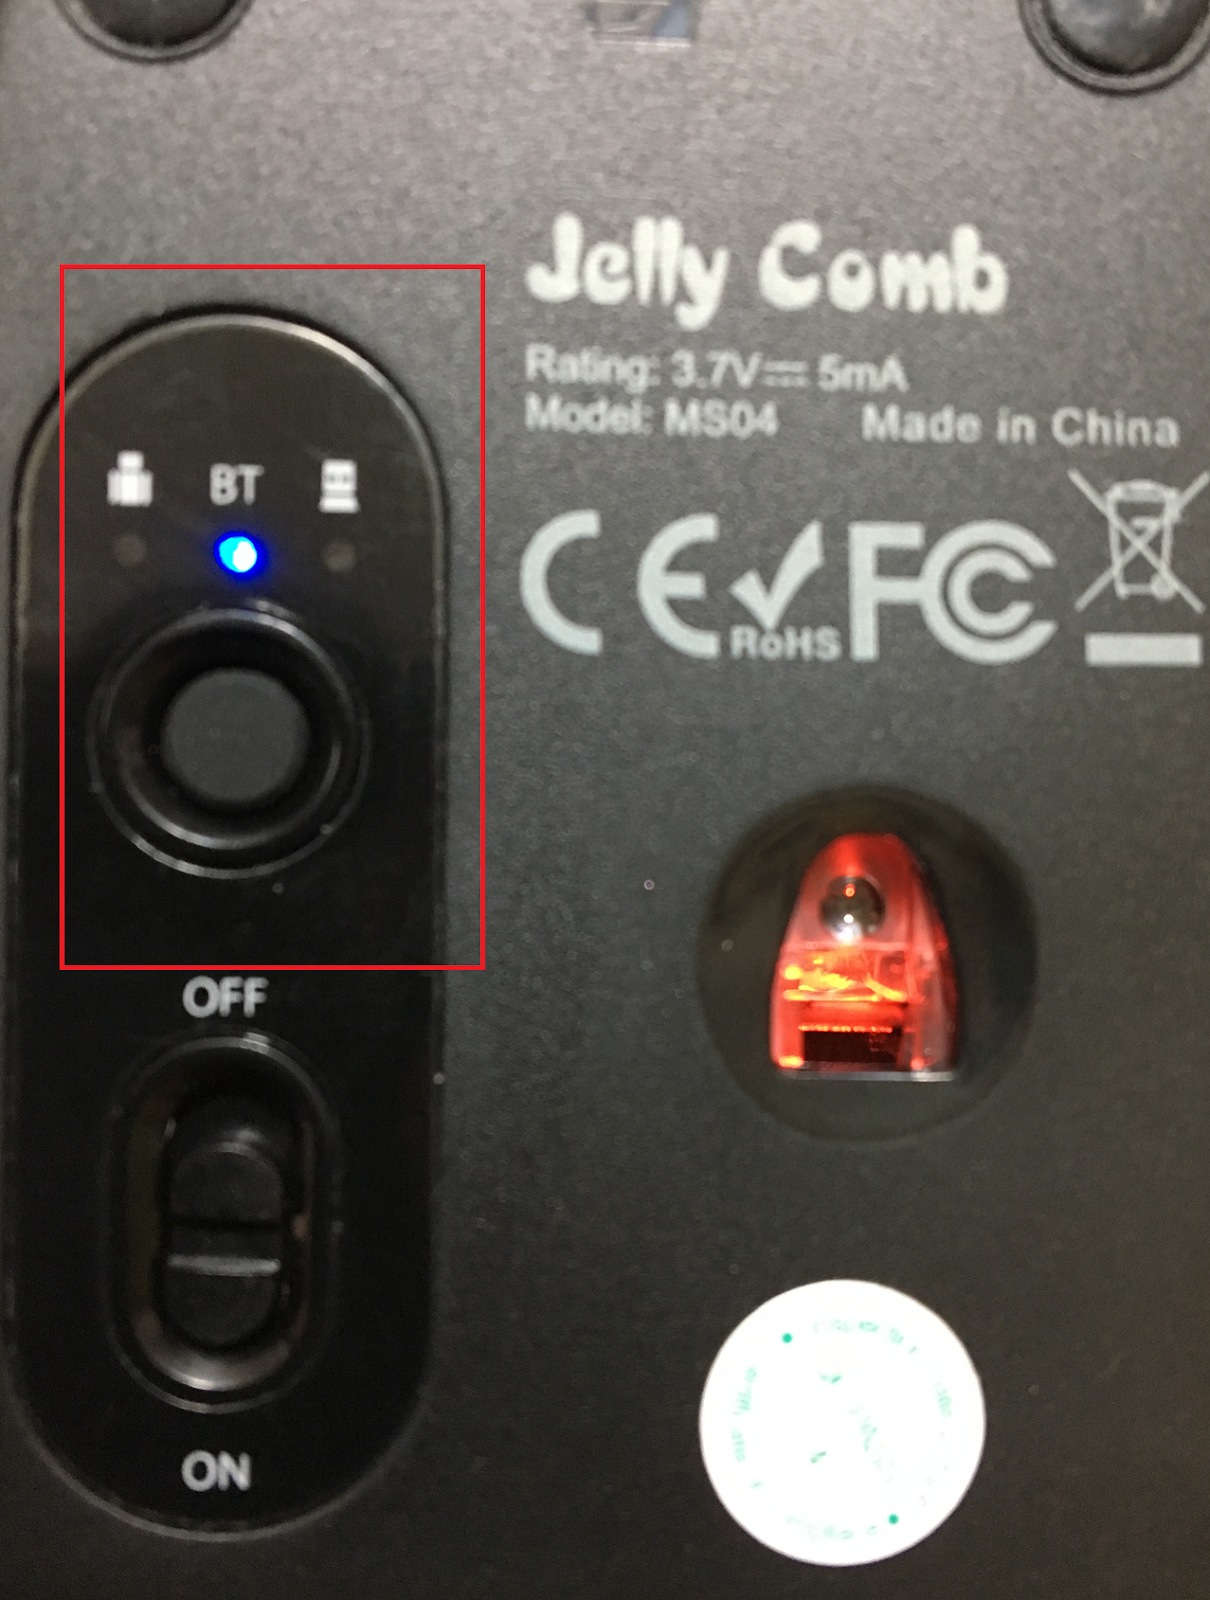 Jellycombのマウスがお洒落すぎてマウスの原宿と感じた Bluetooth接続方法も記載 たろたろブログ